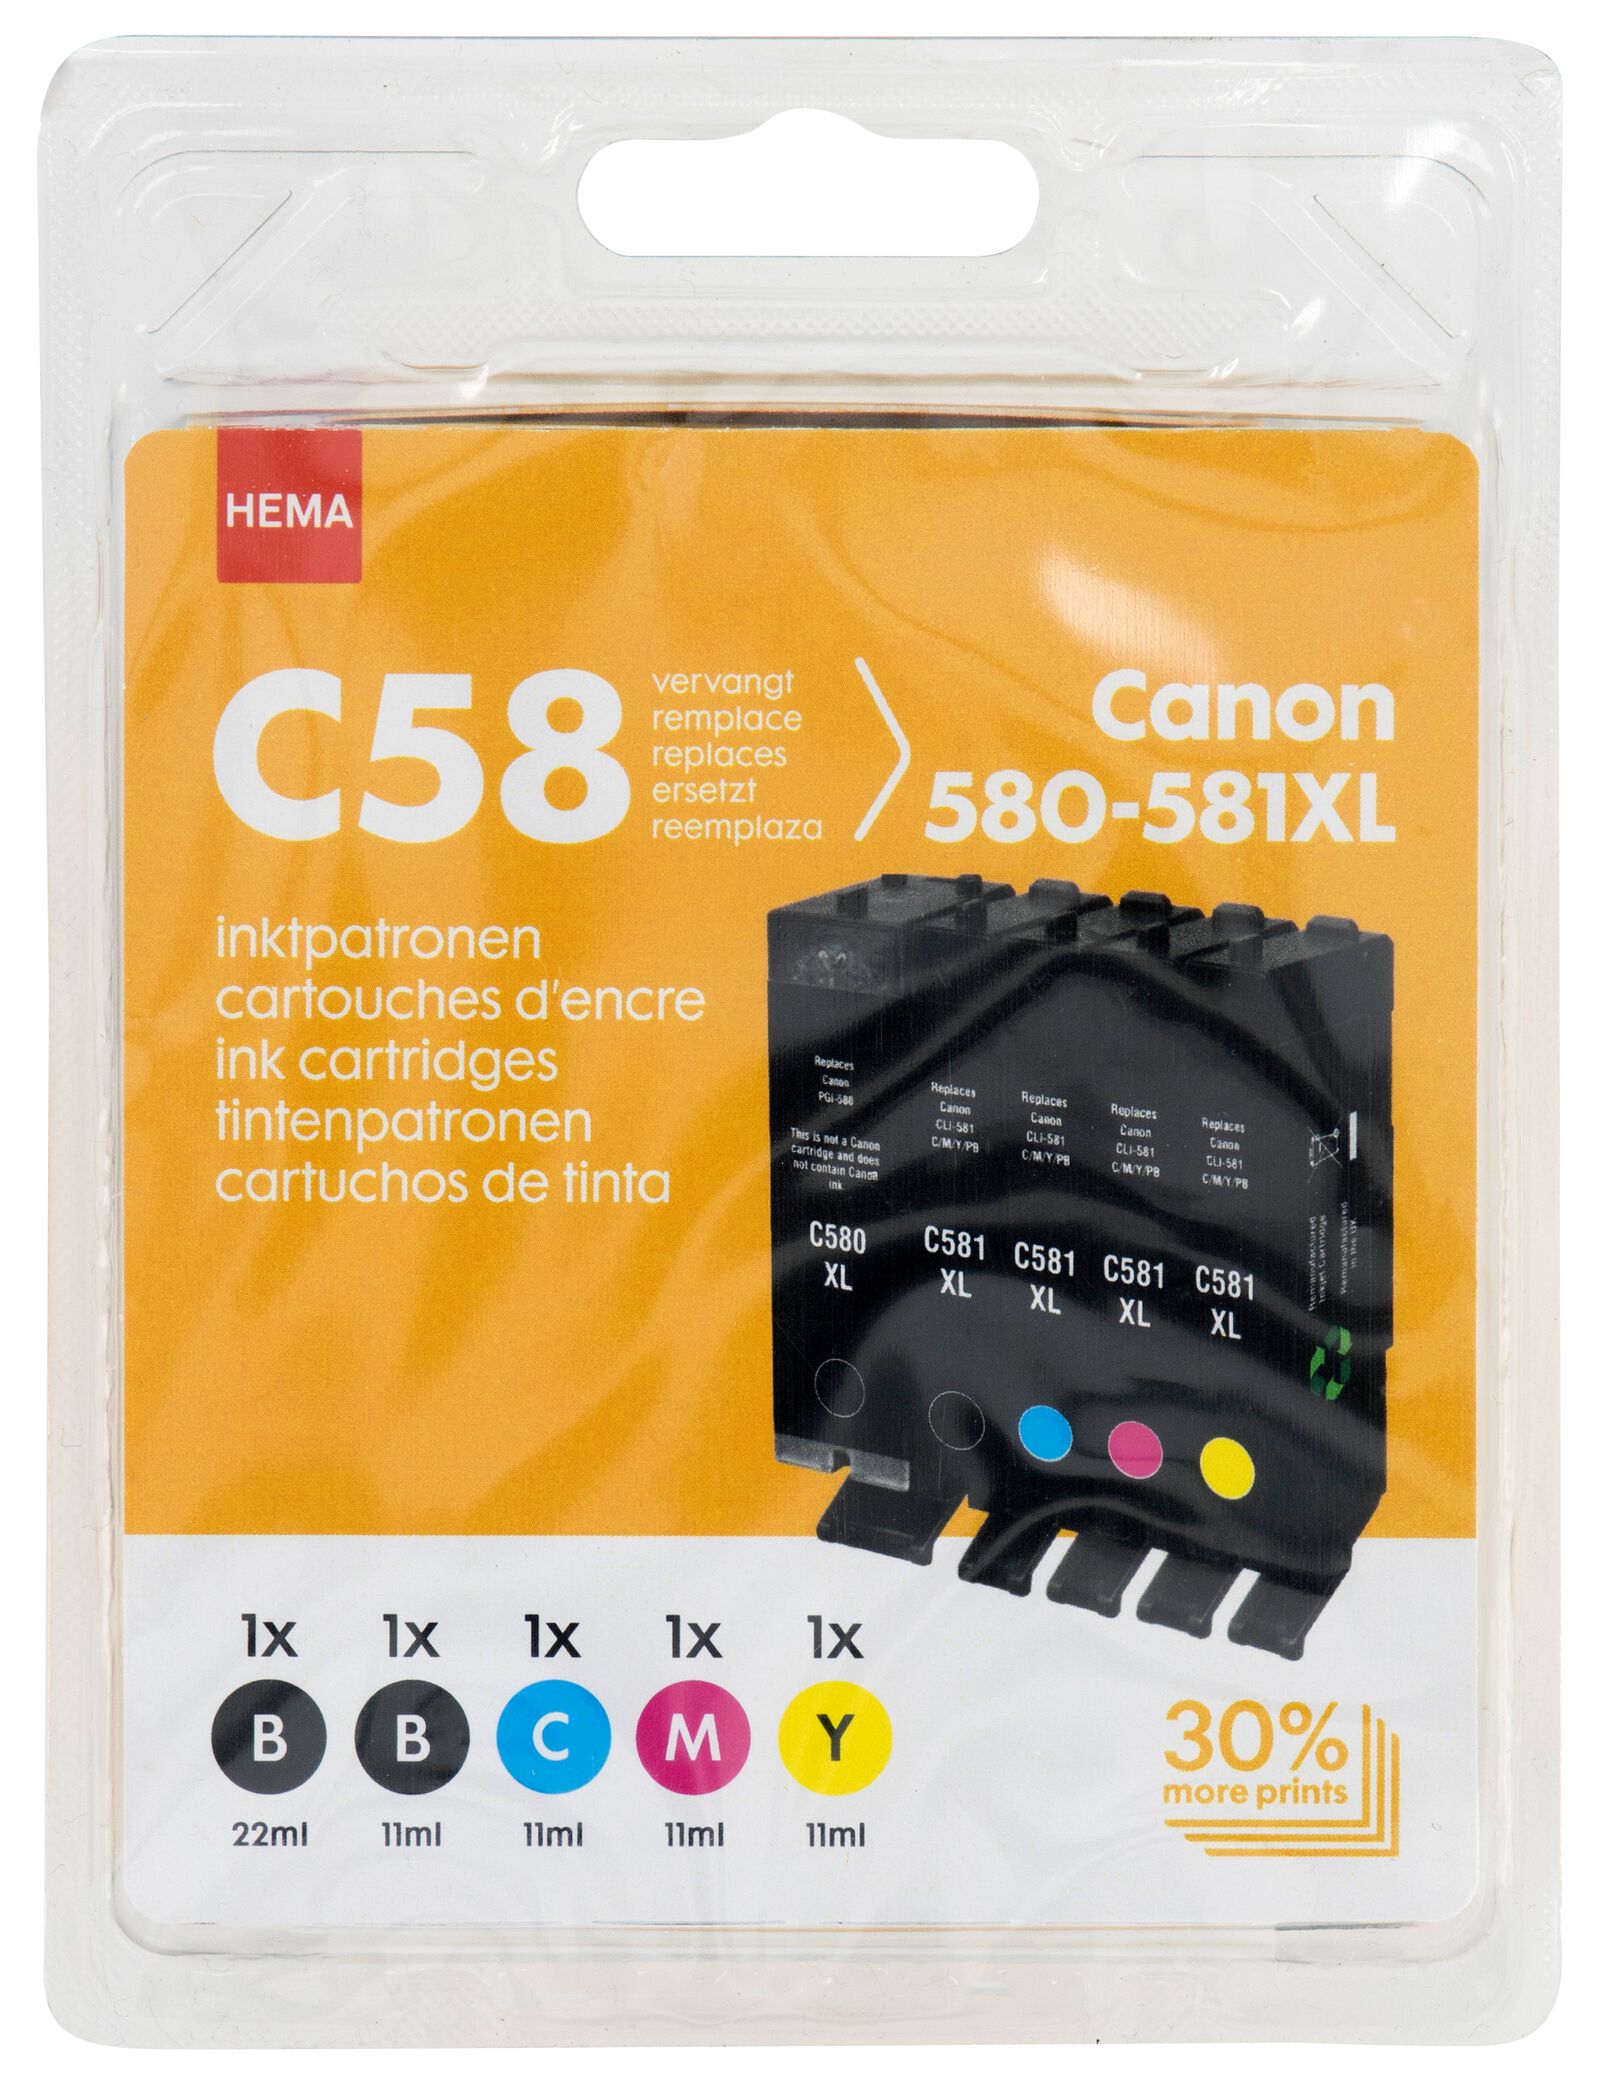 HEMA-Druckerpatrone C58, kompatibel mit Canon 580-581XL in Schwarz/CMY - 38300004 - HEMA